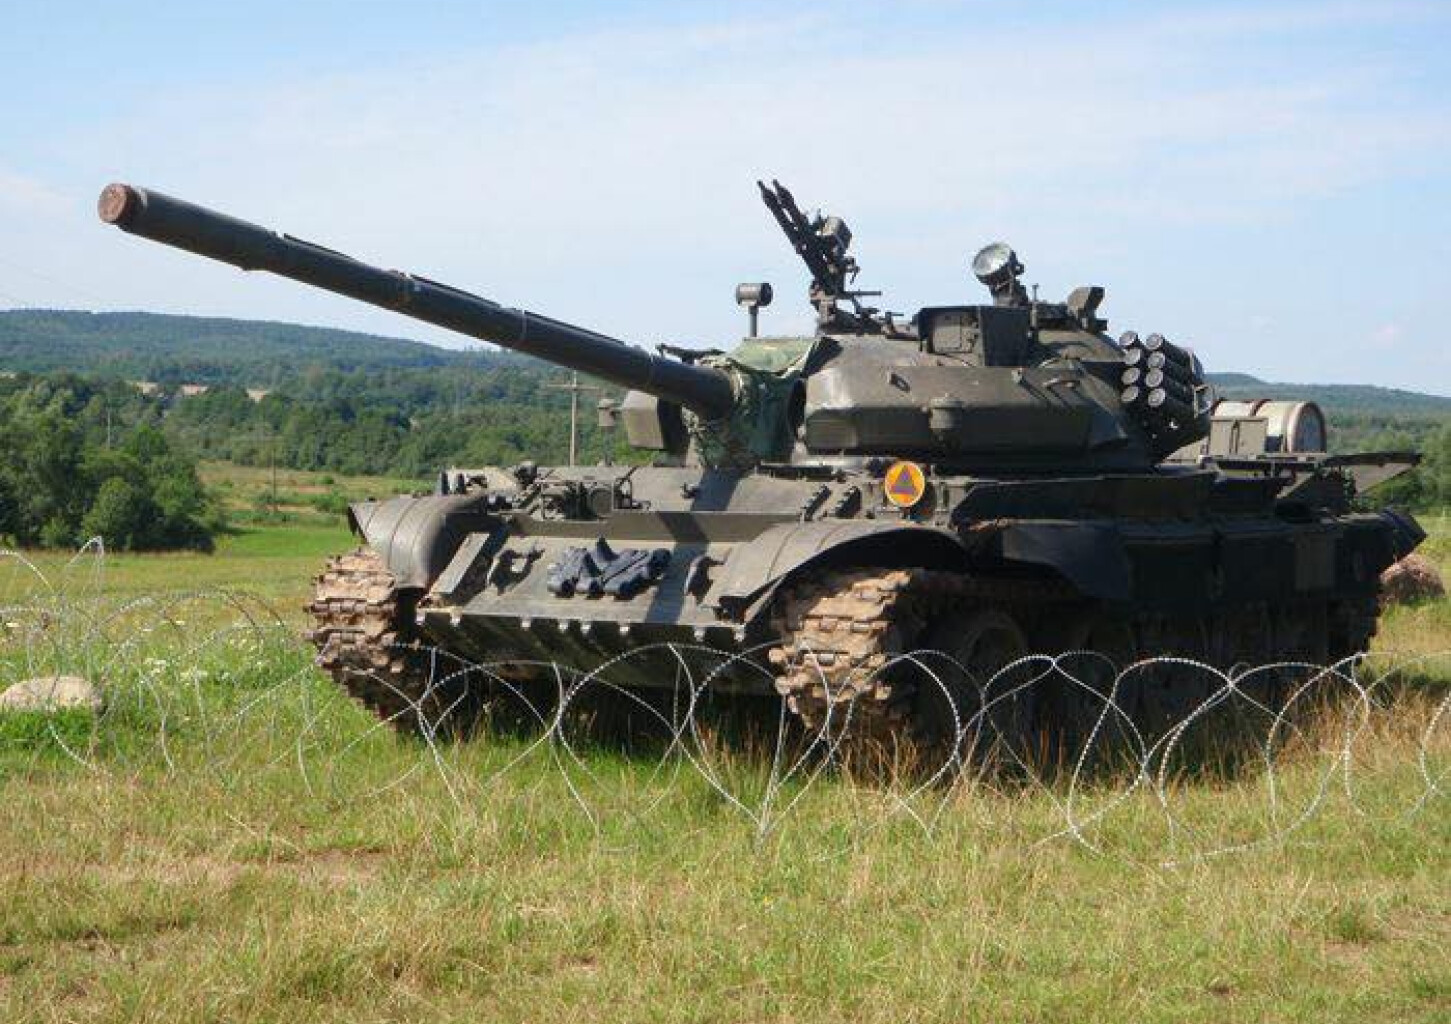 Jazda Czołgiem T-55 | Koszalin (okolice)